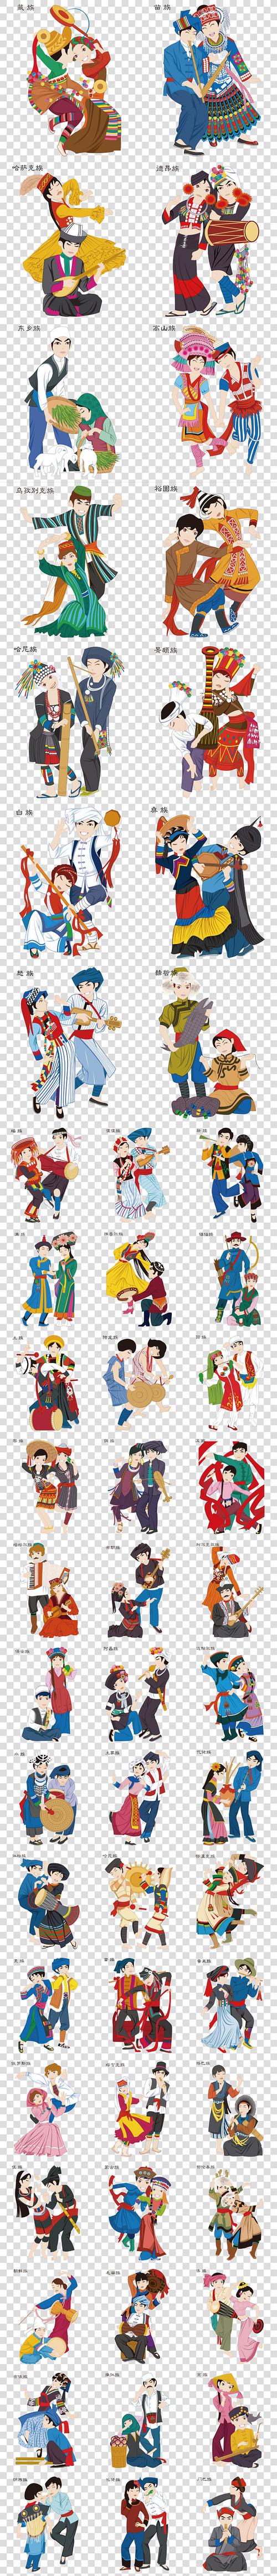 民族大团结和谐服装少数服饰跳舞男女人物画名称风俗习惯节日汉族苗族